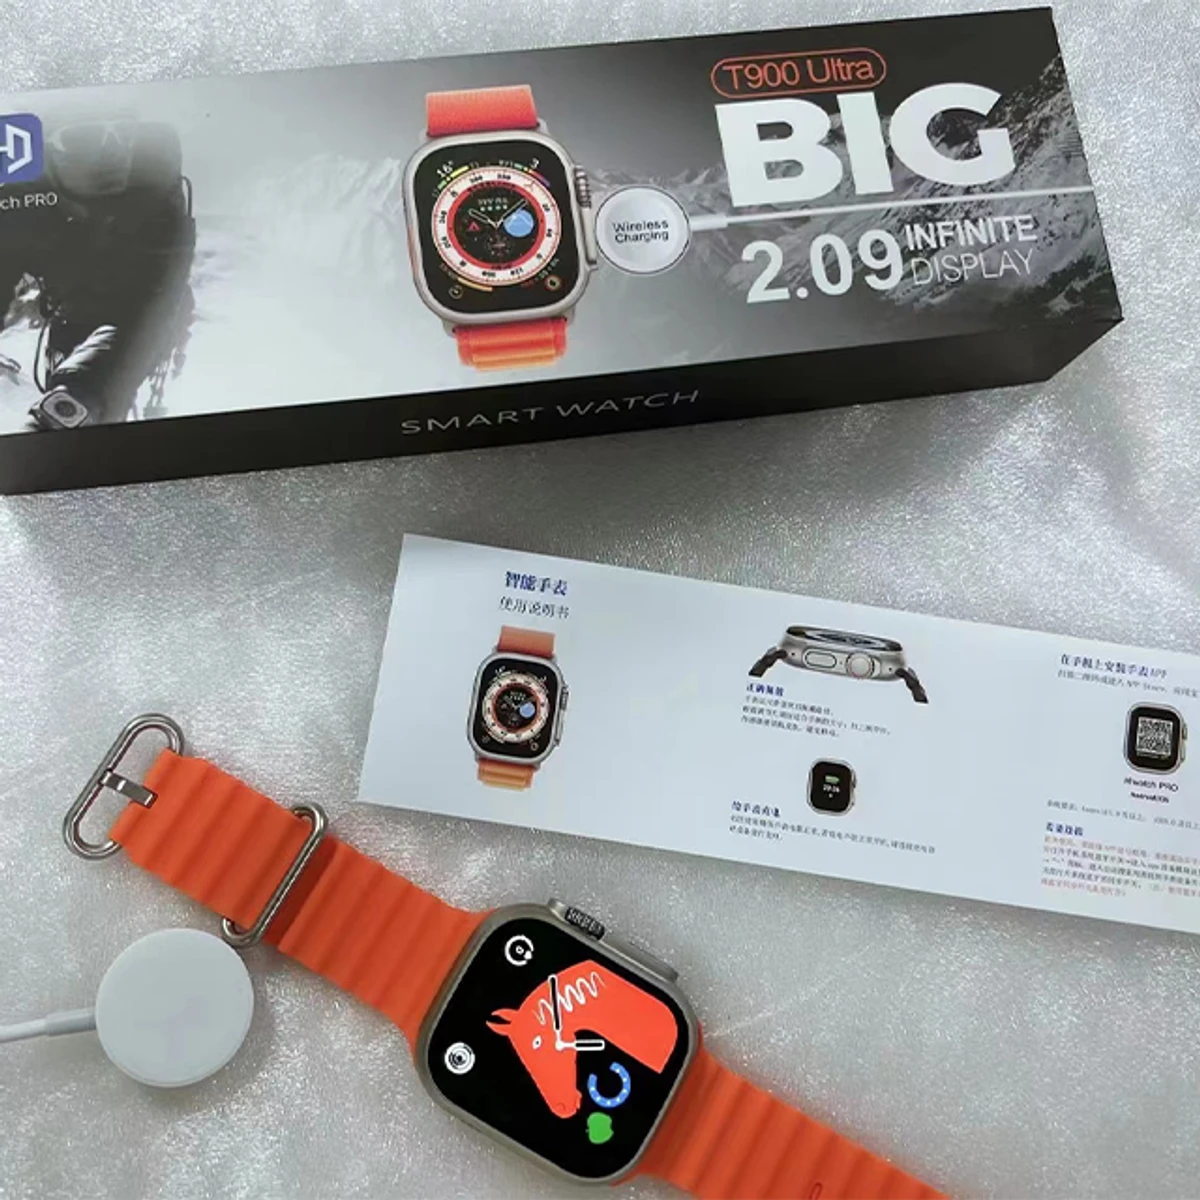 T900 Ultra Men Smart Watch 2.09" HD Orange